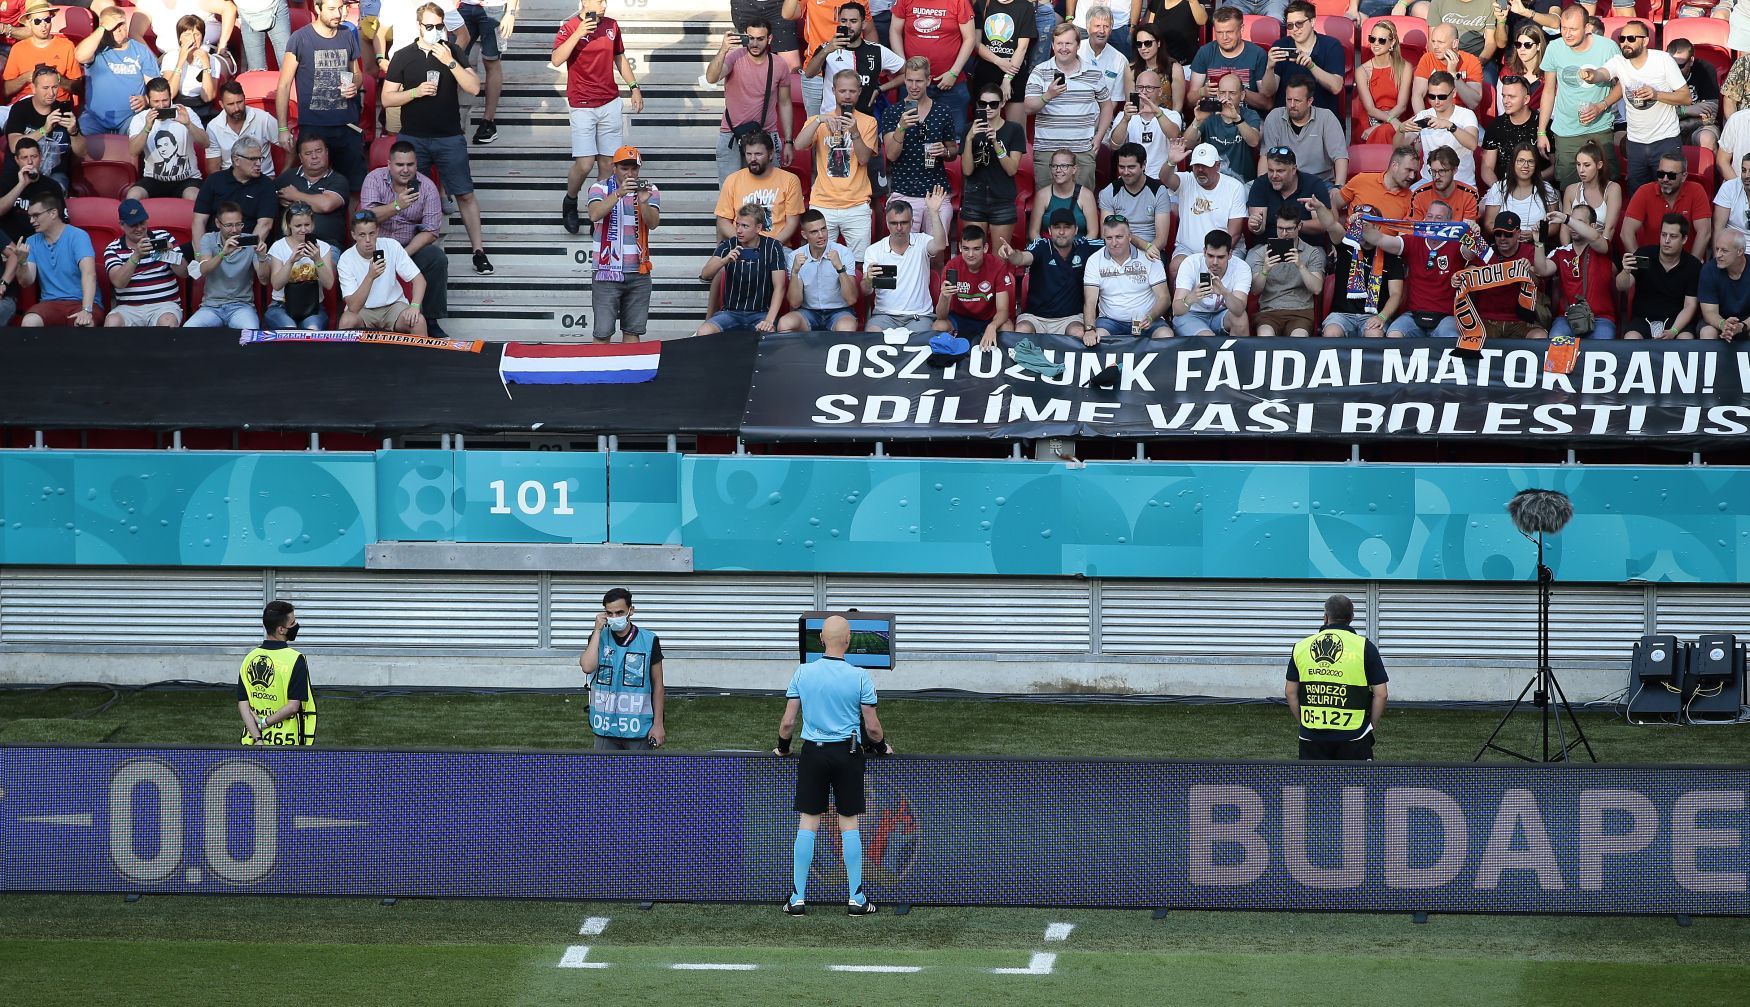 Transparent maďarských fanoušků "Sdílíme vaši bolest, jsme s vámi i dnes" odkazují na řádění tornáda na Moravě v hledišti osmifinále Nizozemsko - Česko na ME 2020